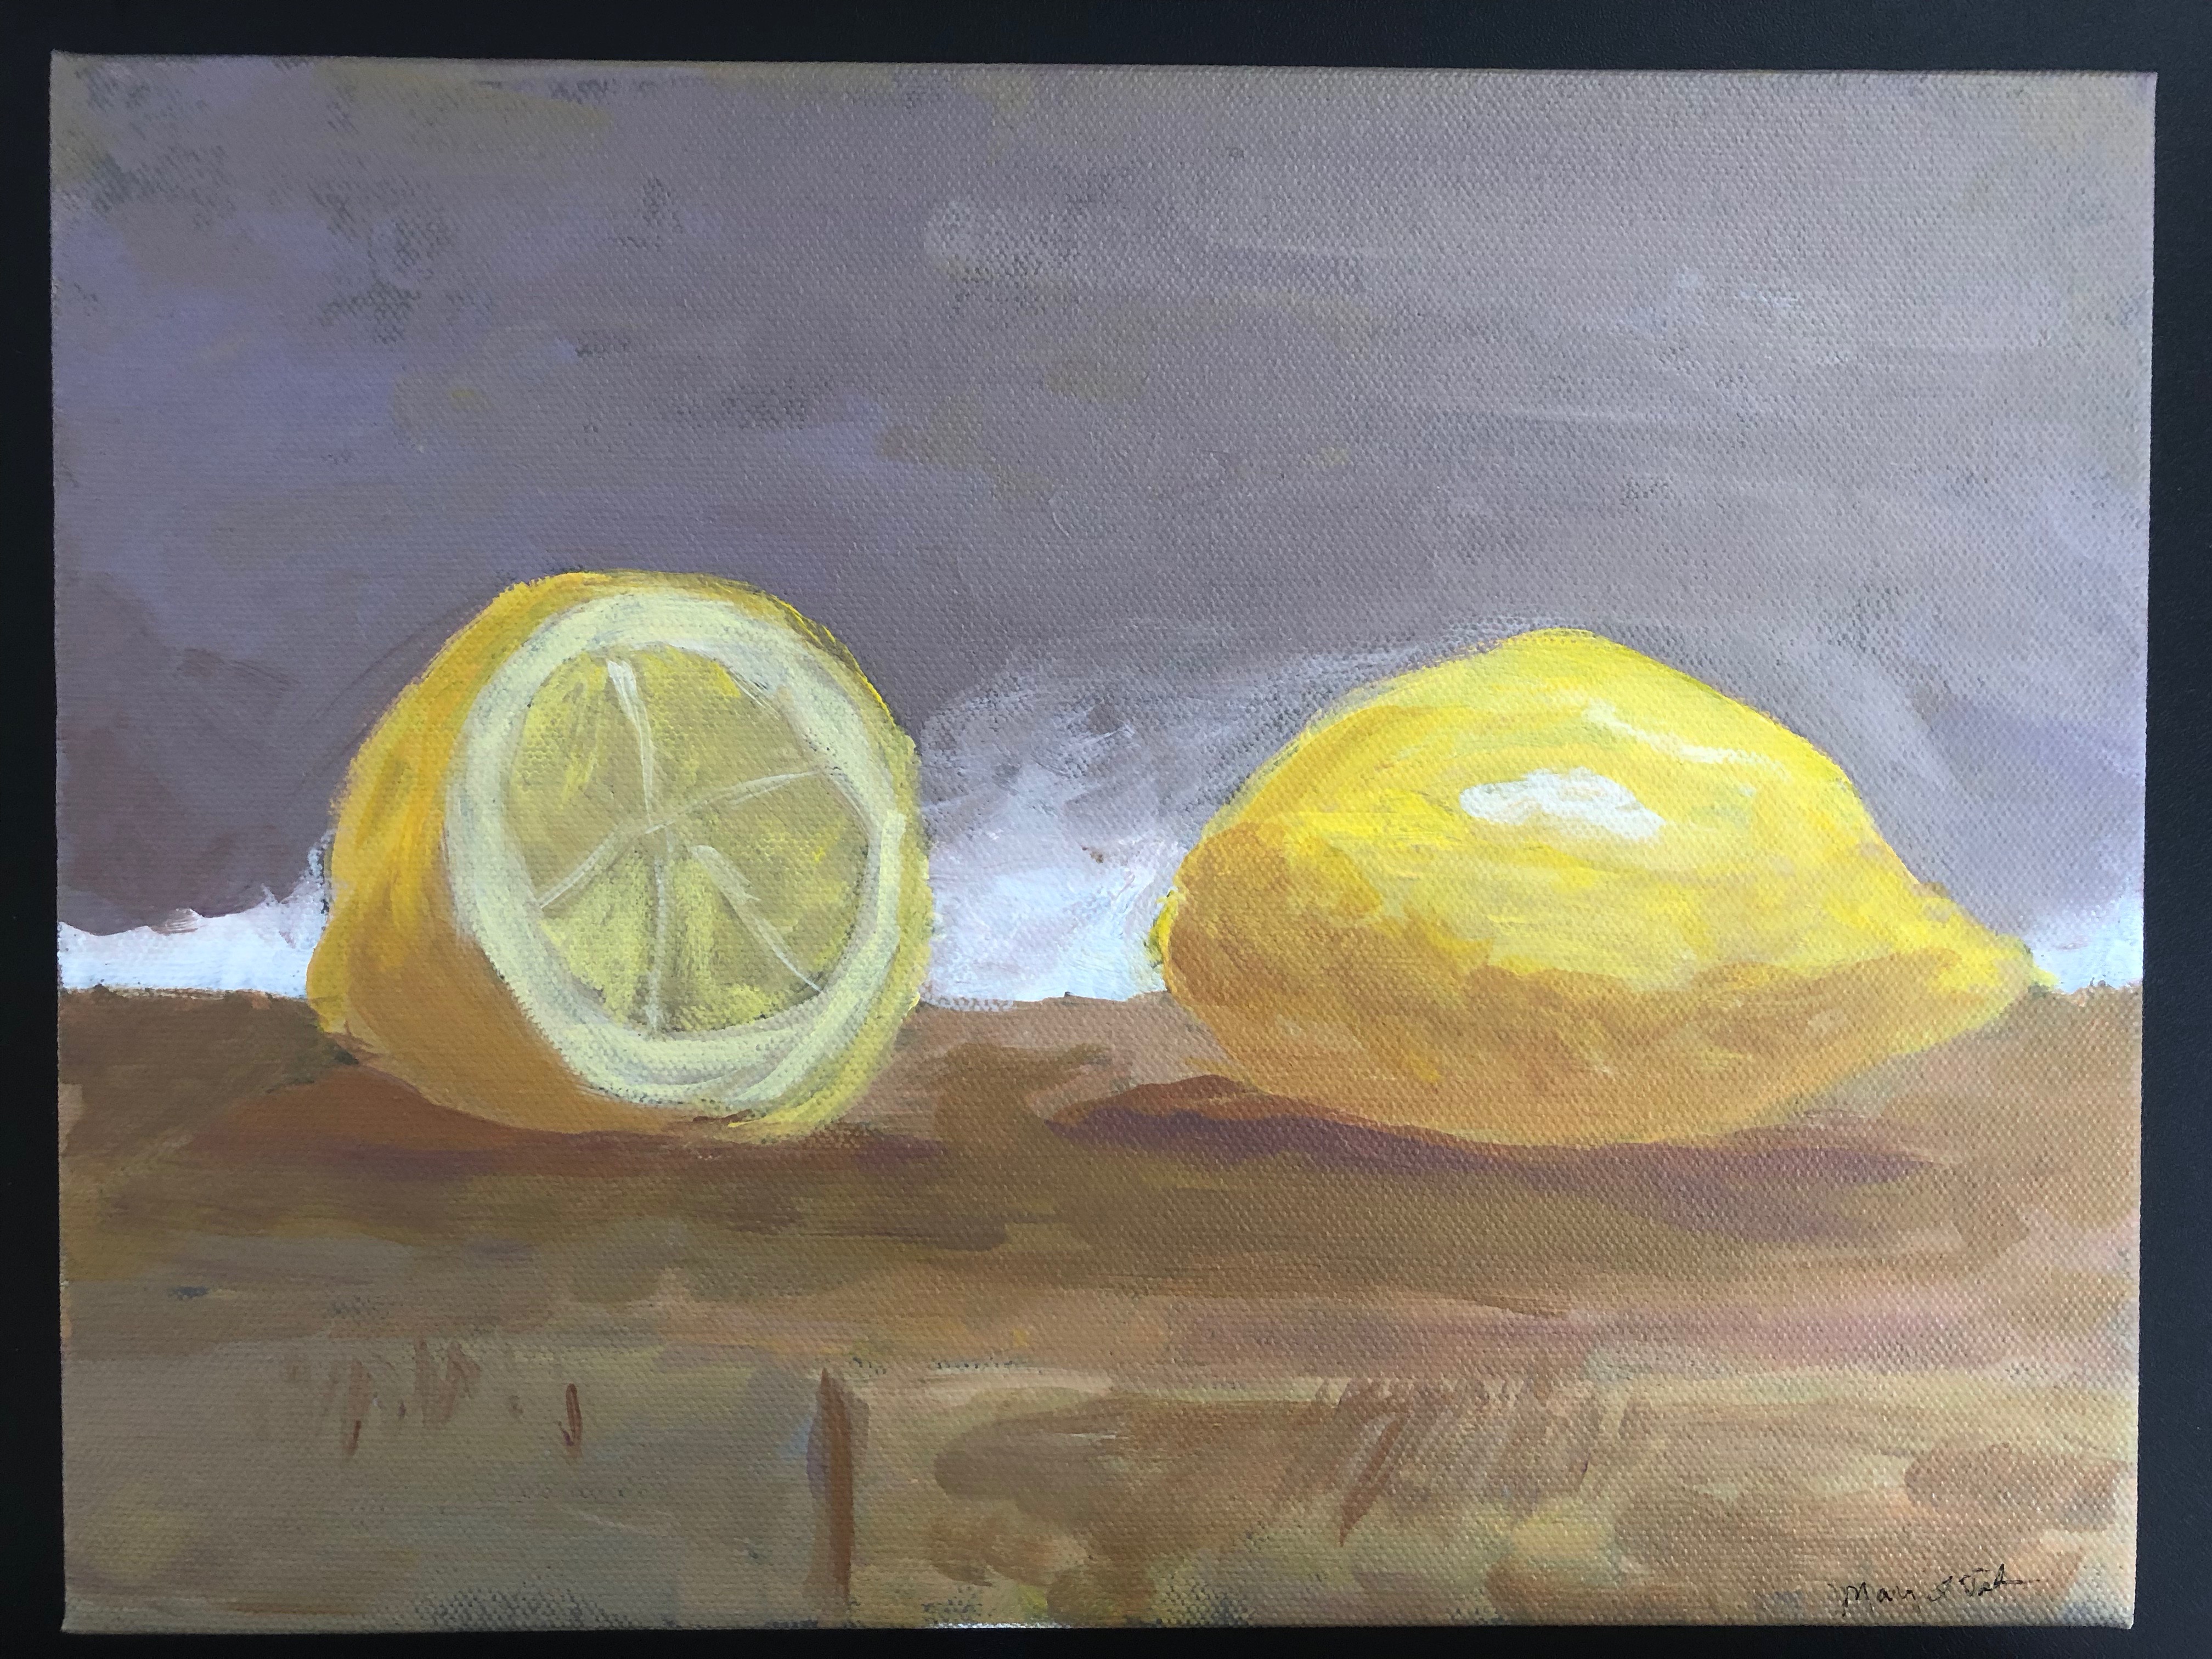 Marys lemons